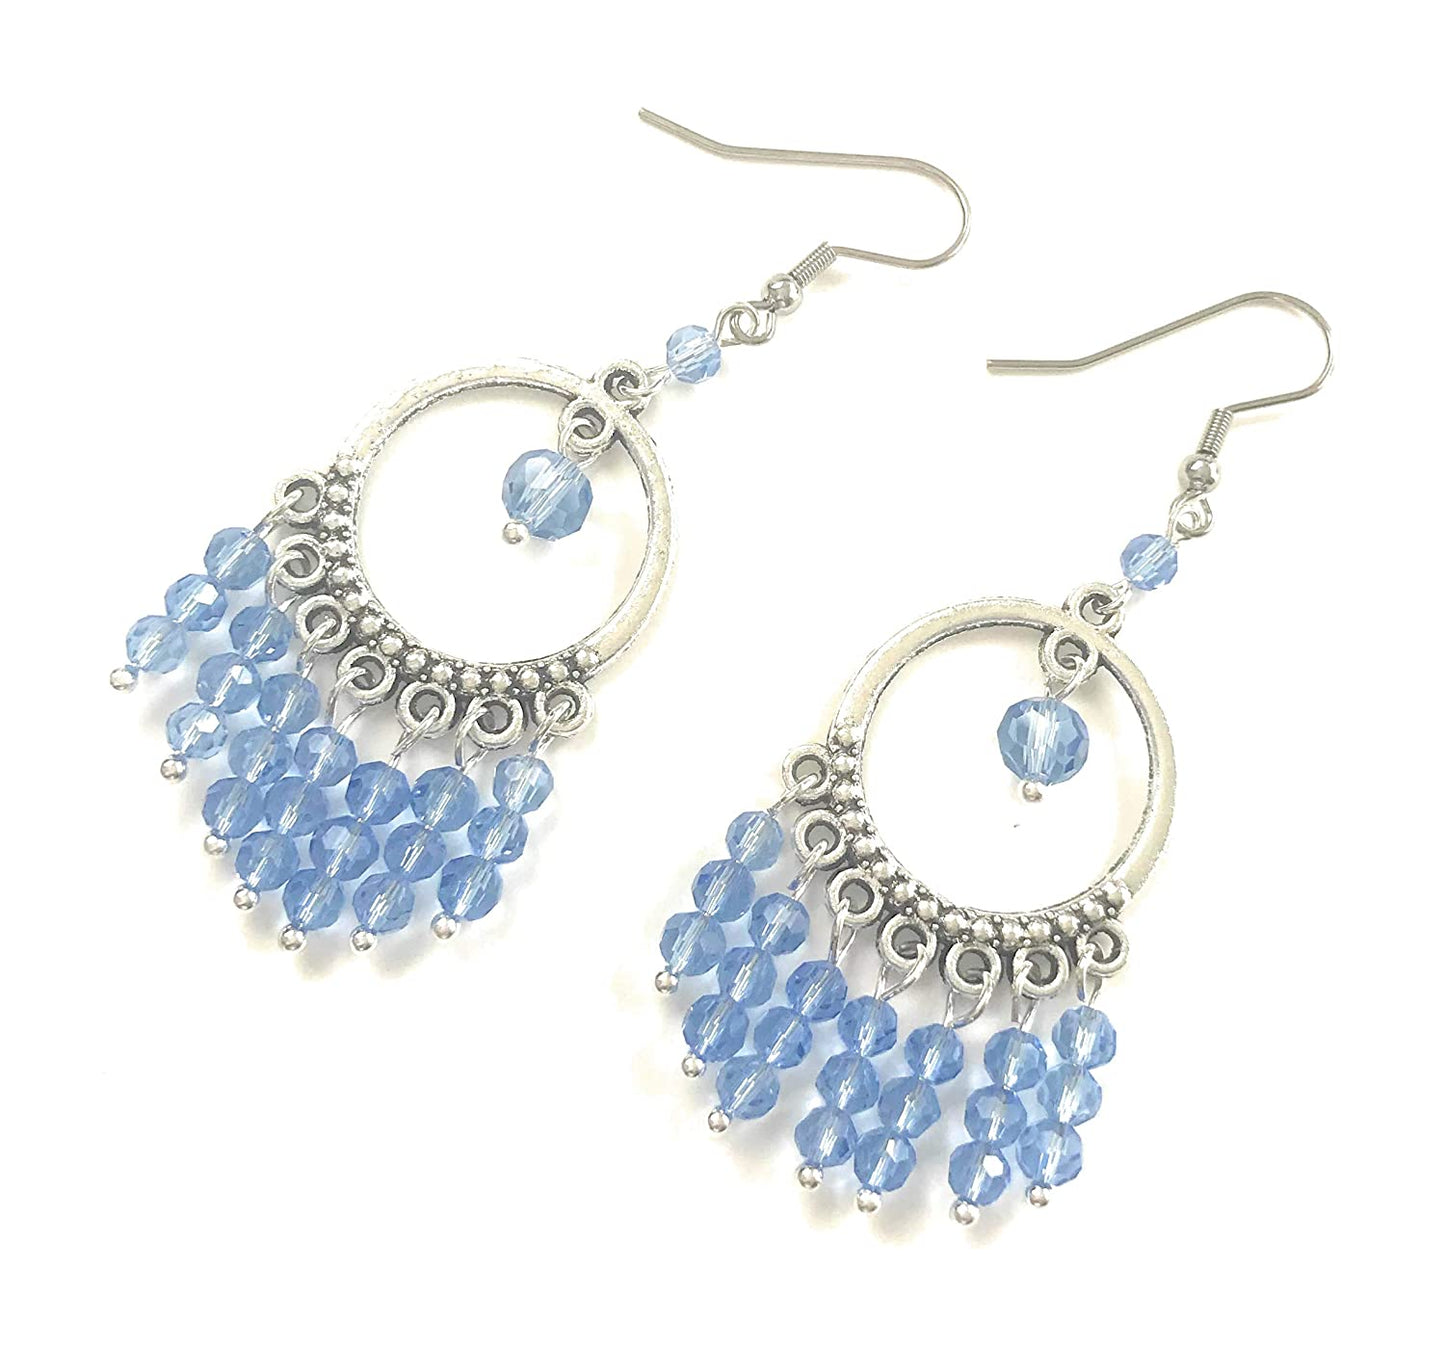 Sky Blue Beaded Chandelier Earrings from Scott D Jewelry Designs